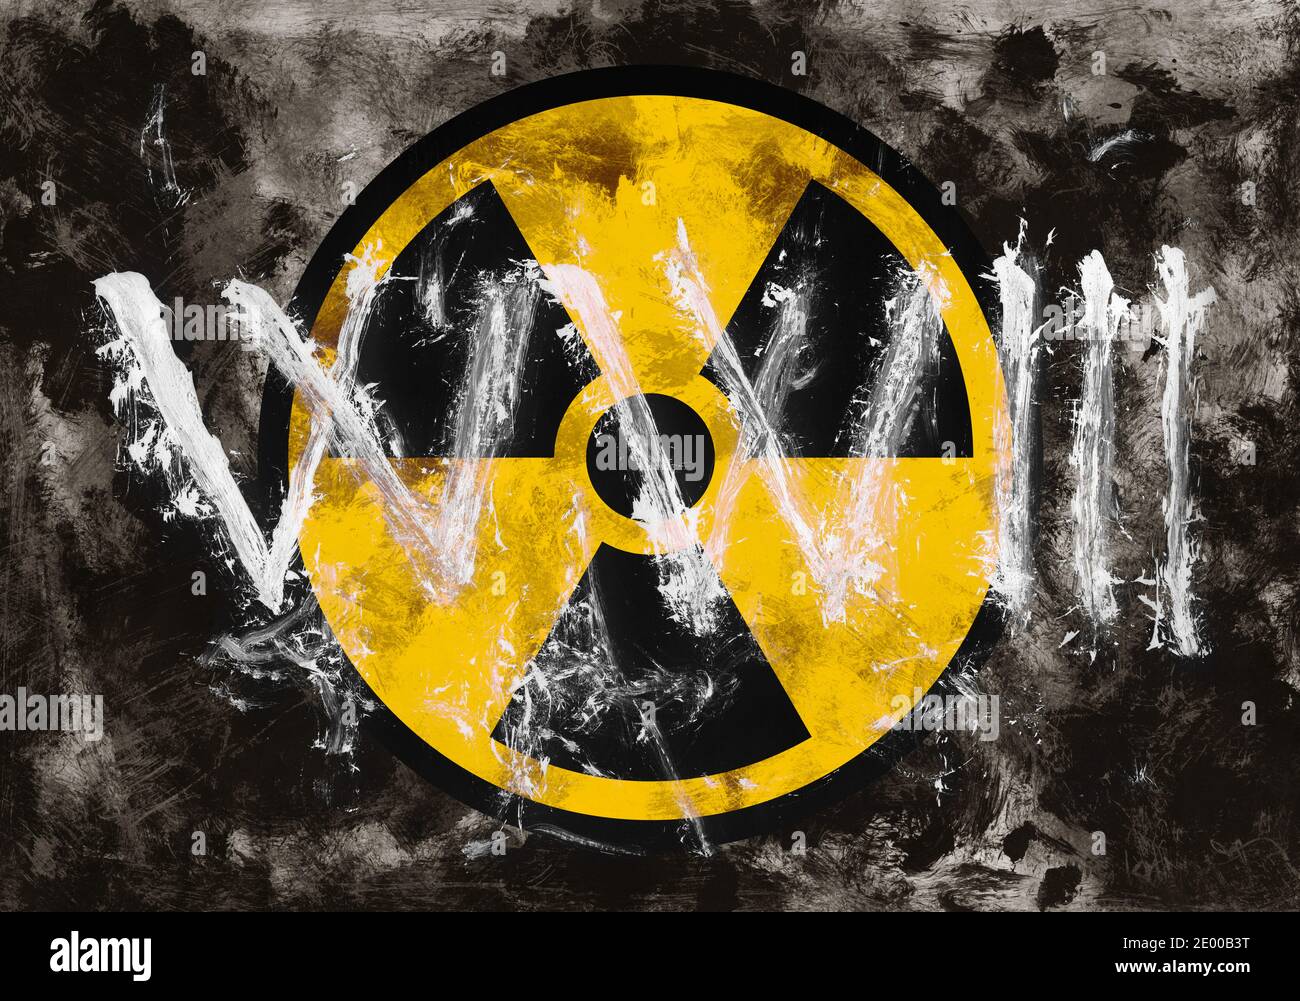 nuke logo wallpaper